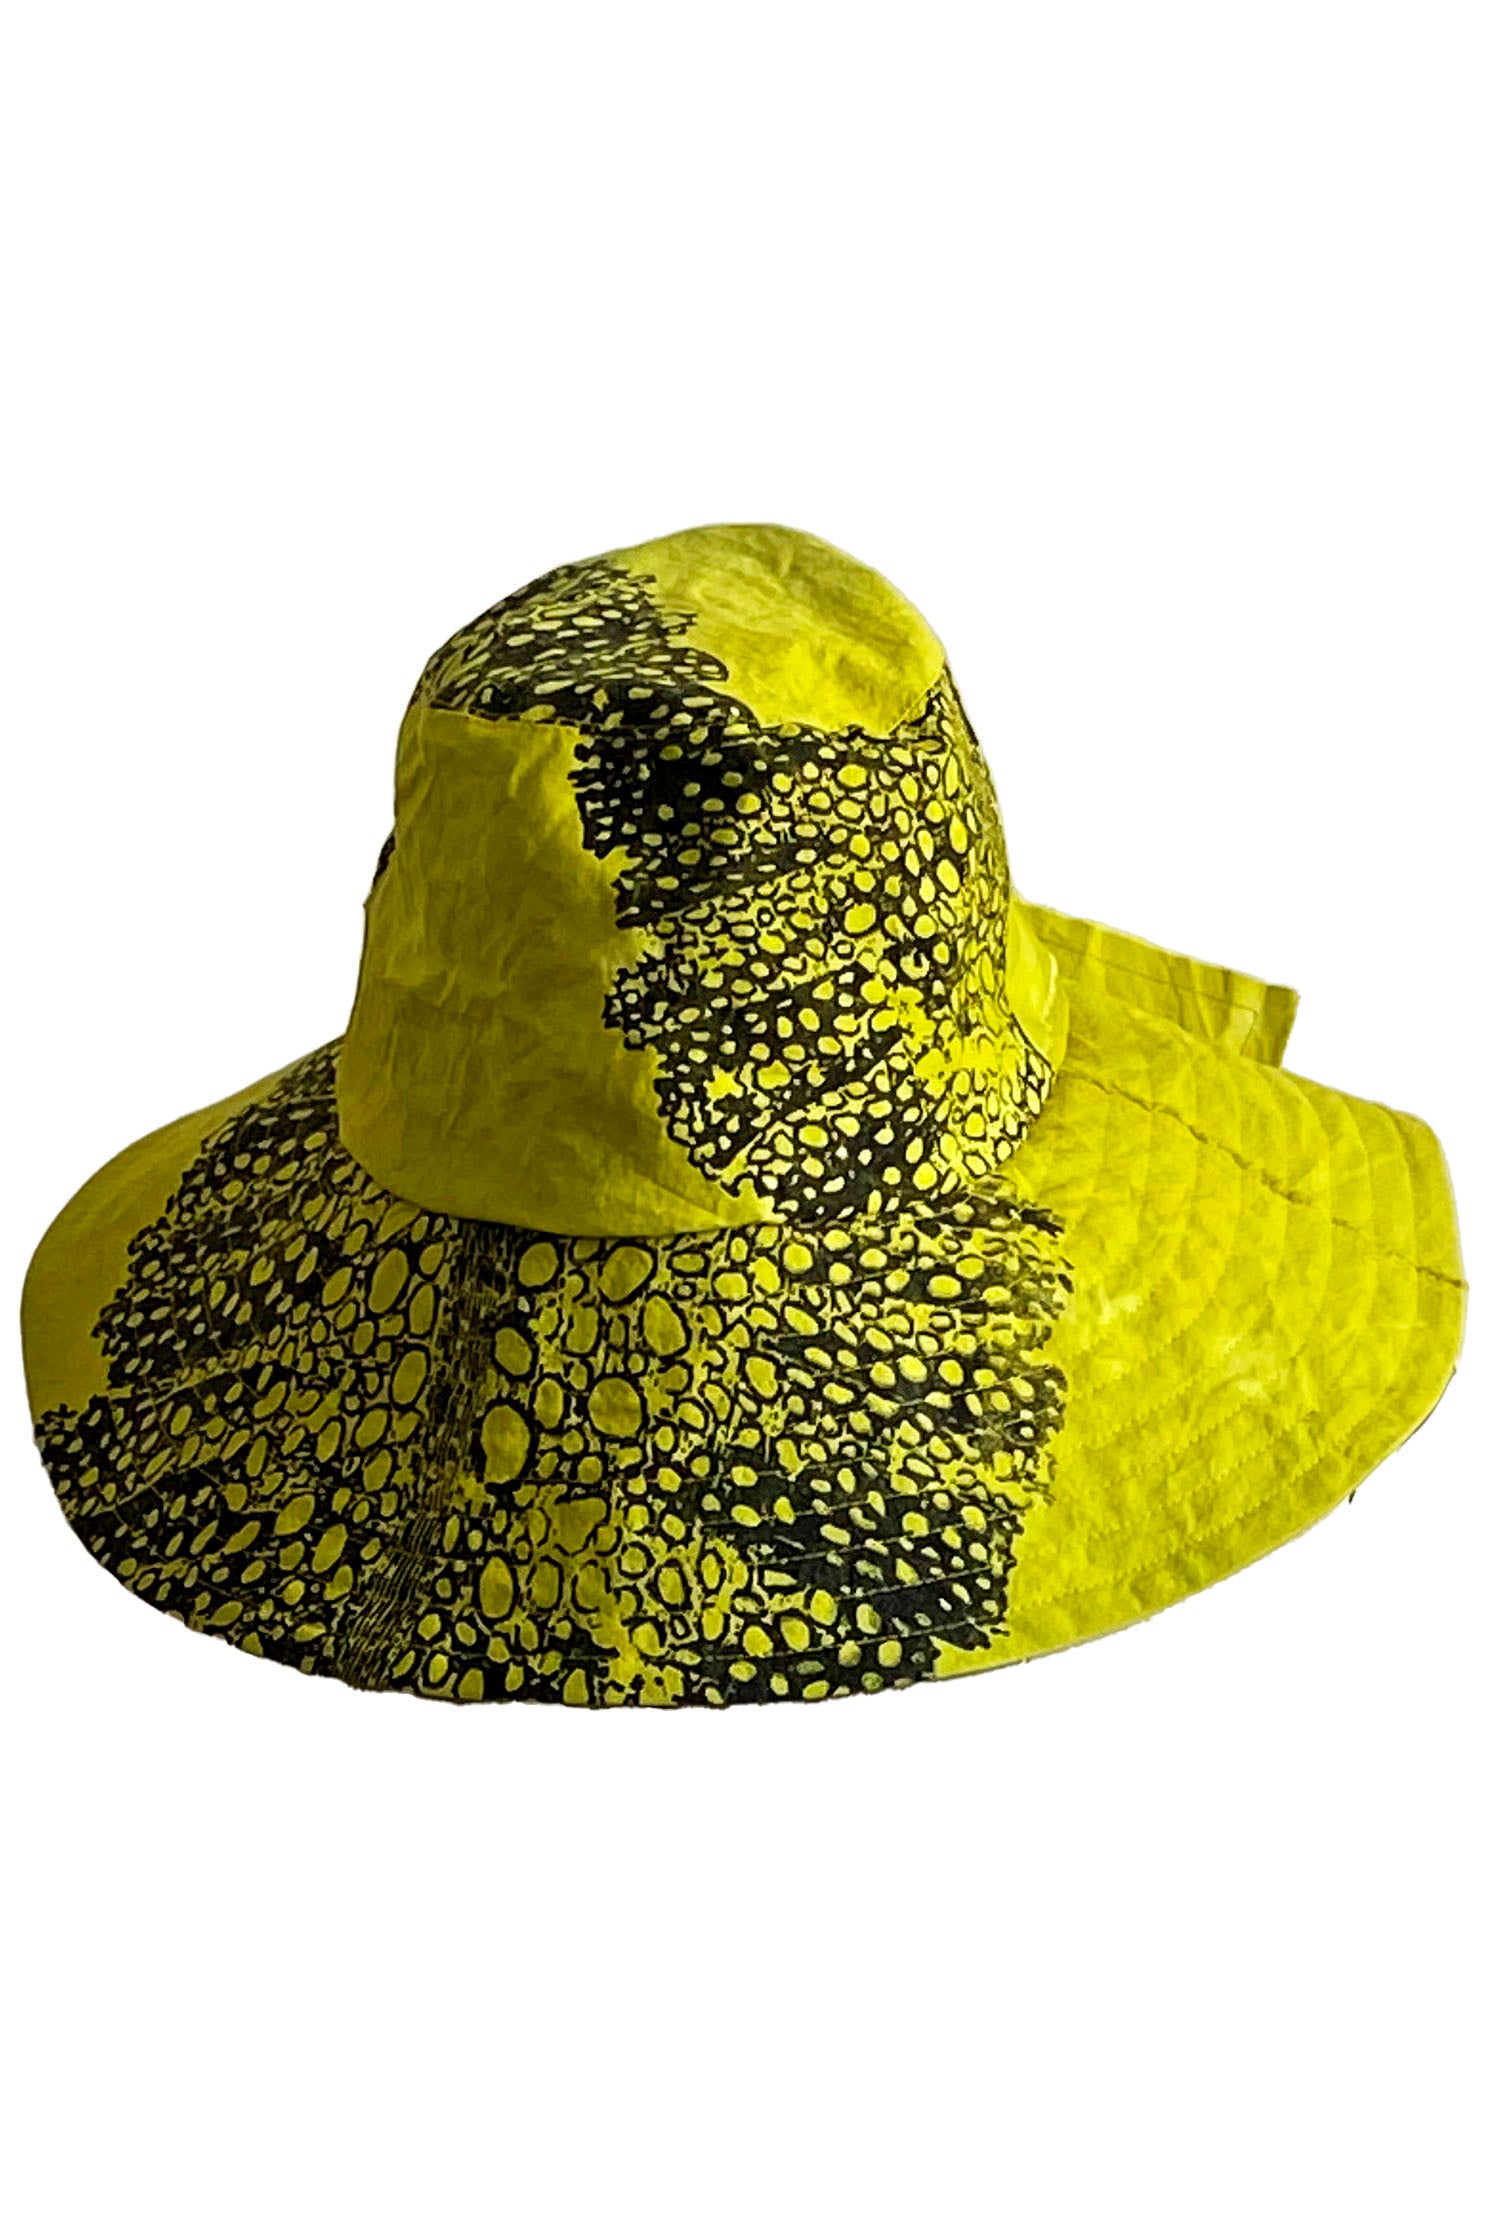 Brighton Hat - Chartreuse w/ Big Leaf Print